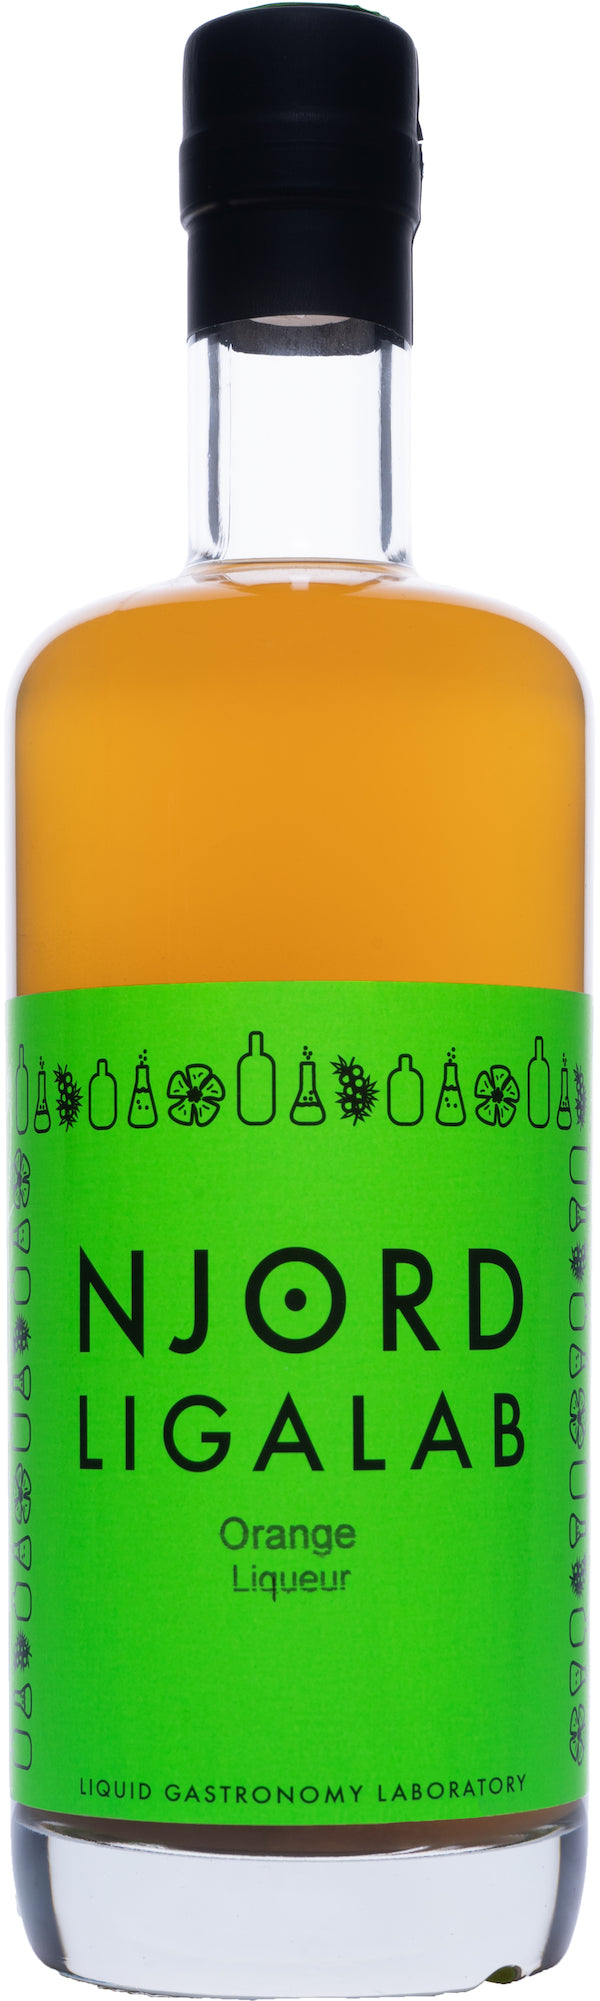 Njord Ligalab Orange Liqueur